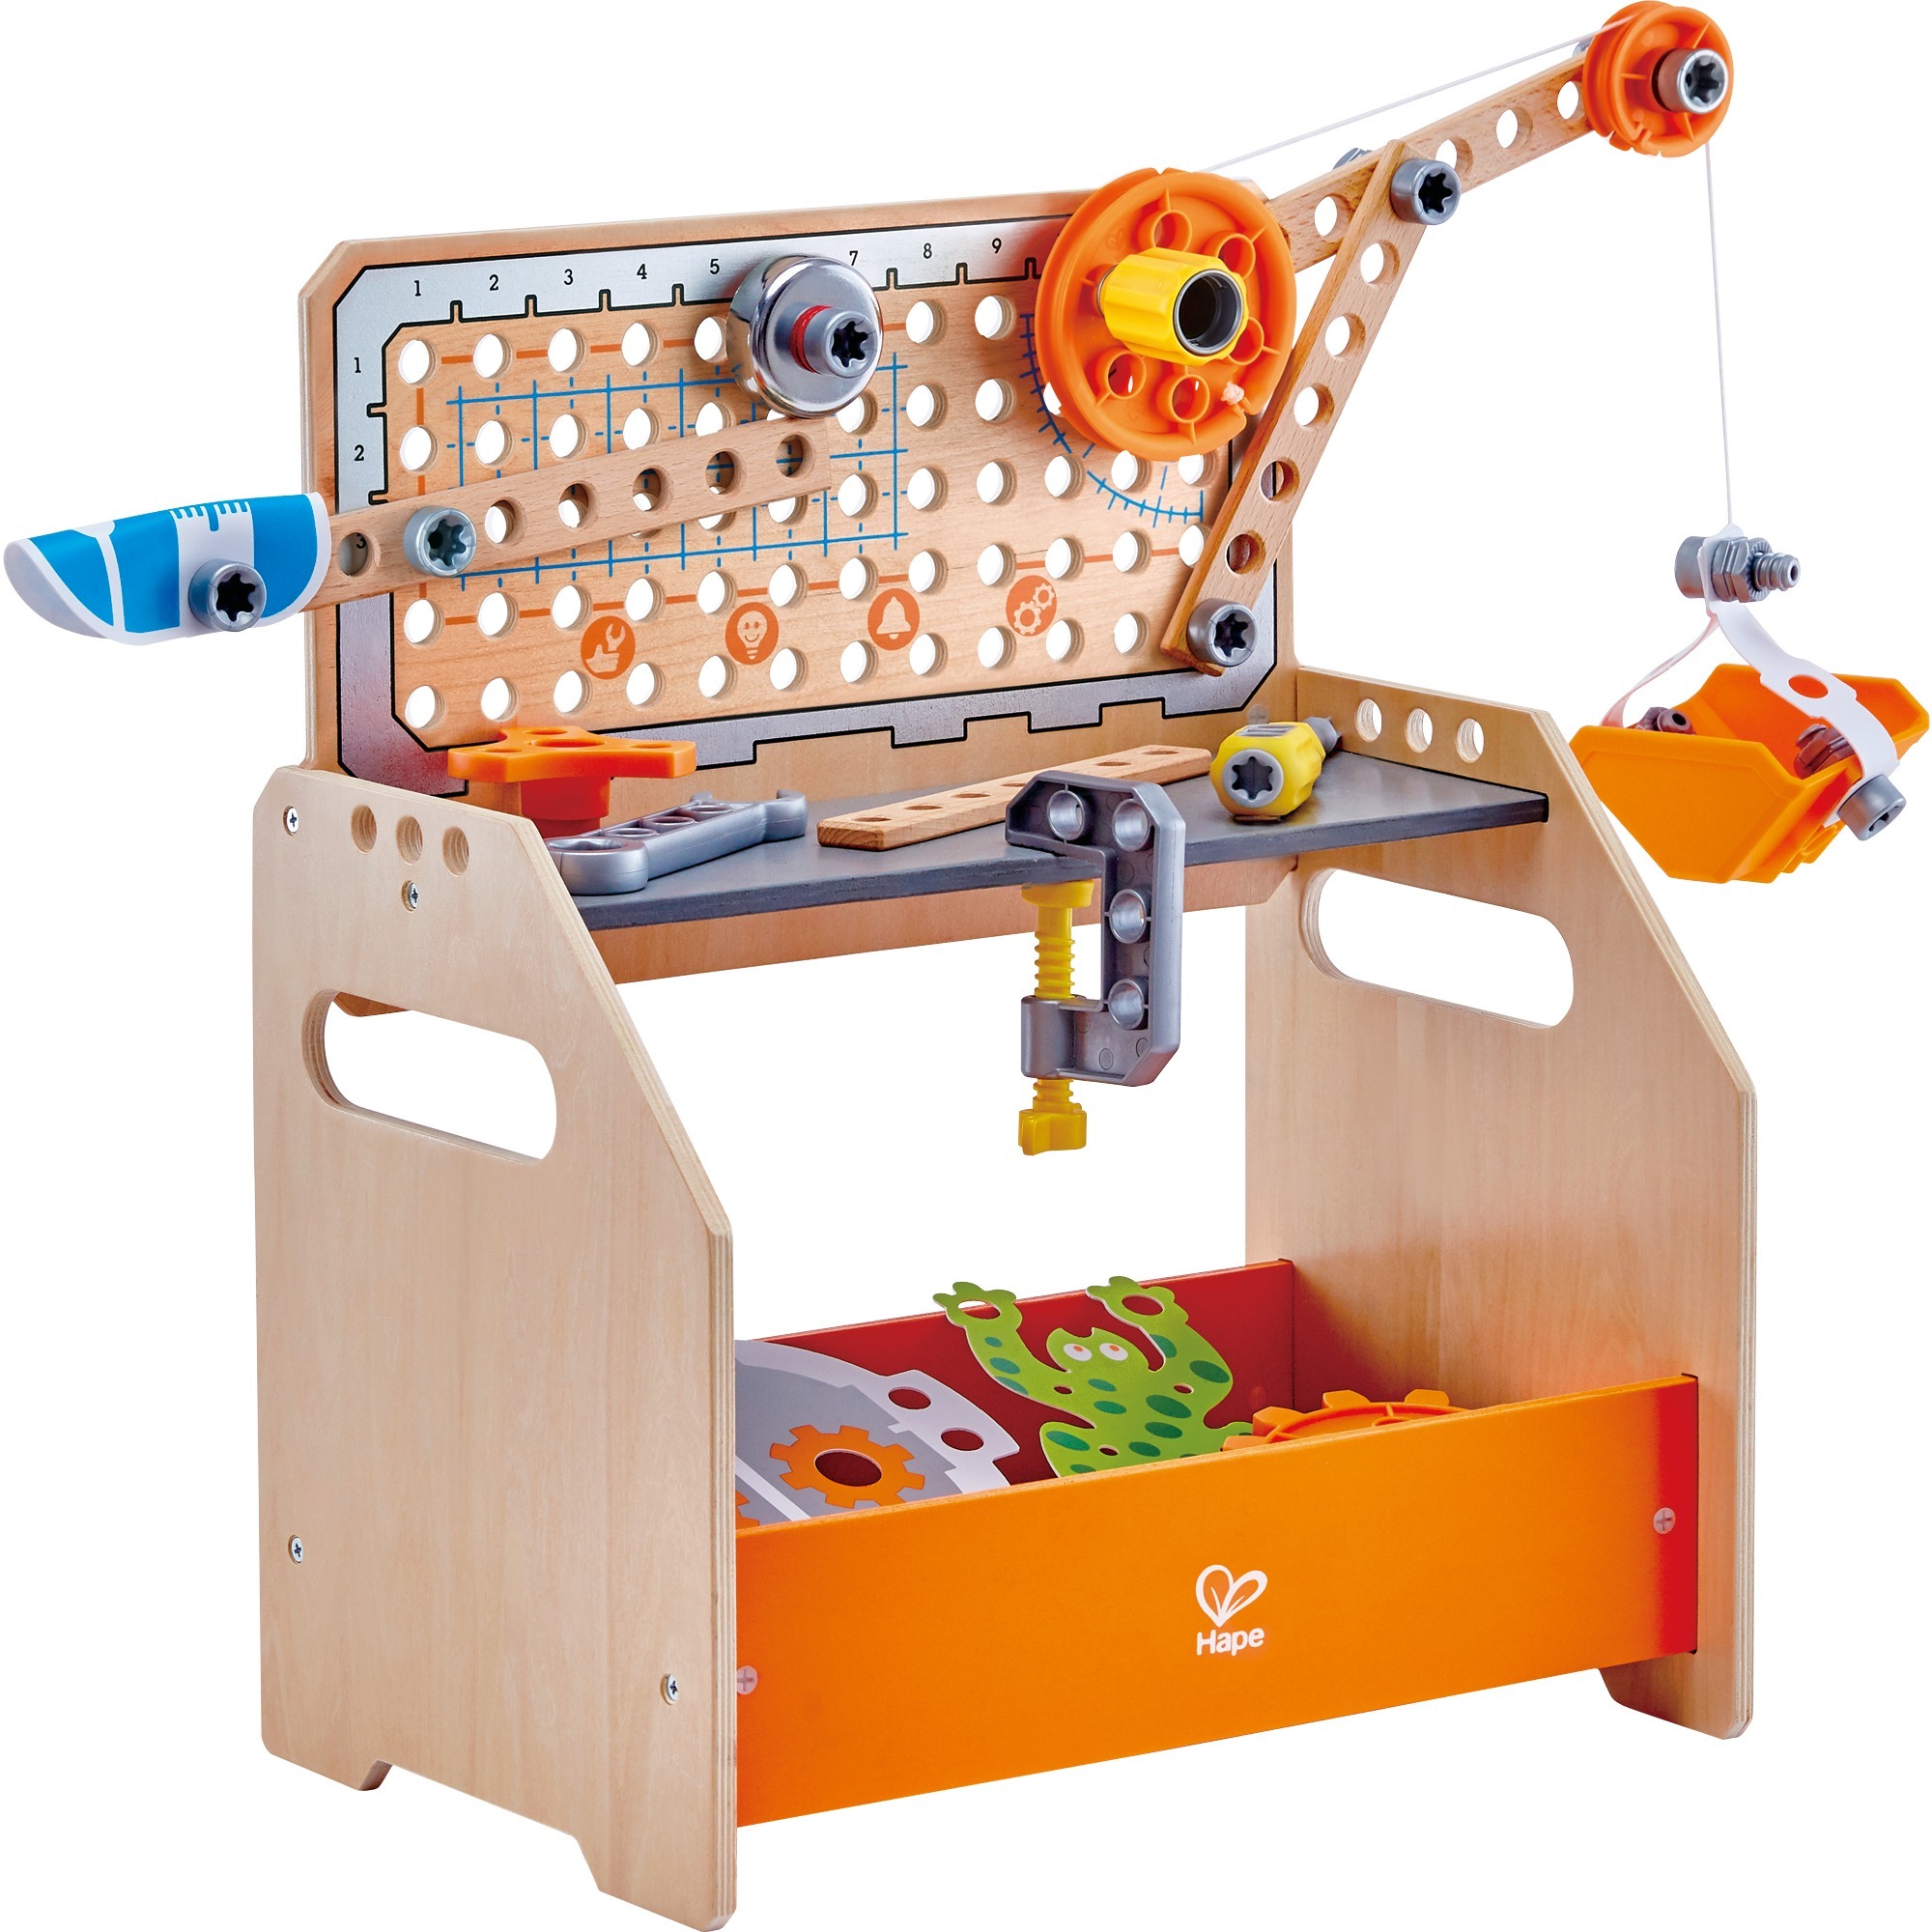 Image of Alternate - Tüftler-Arbeitstisch, Kinderwerkzeug online einkaufen bei Alternate